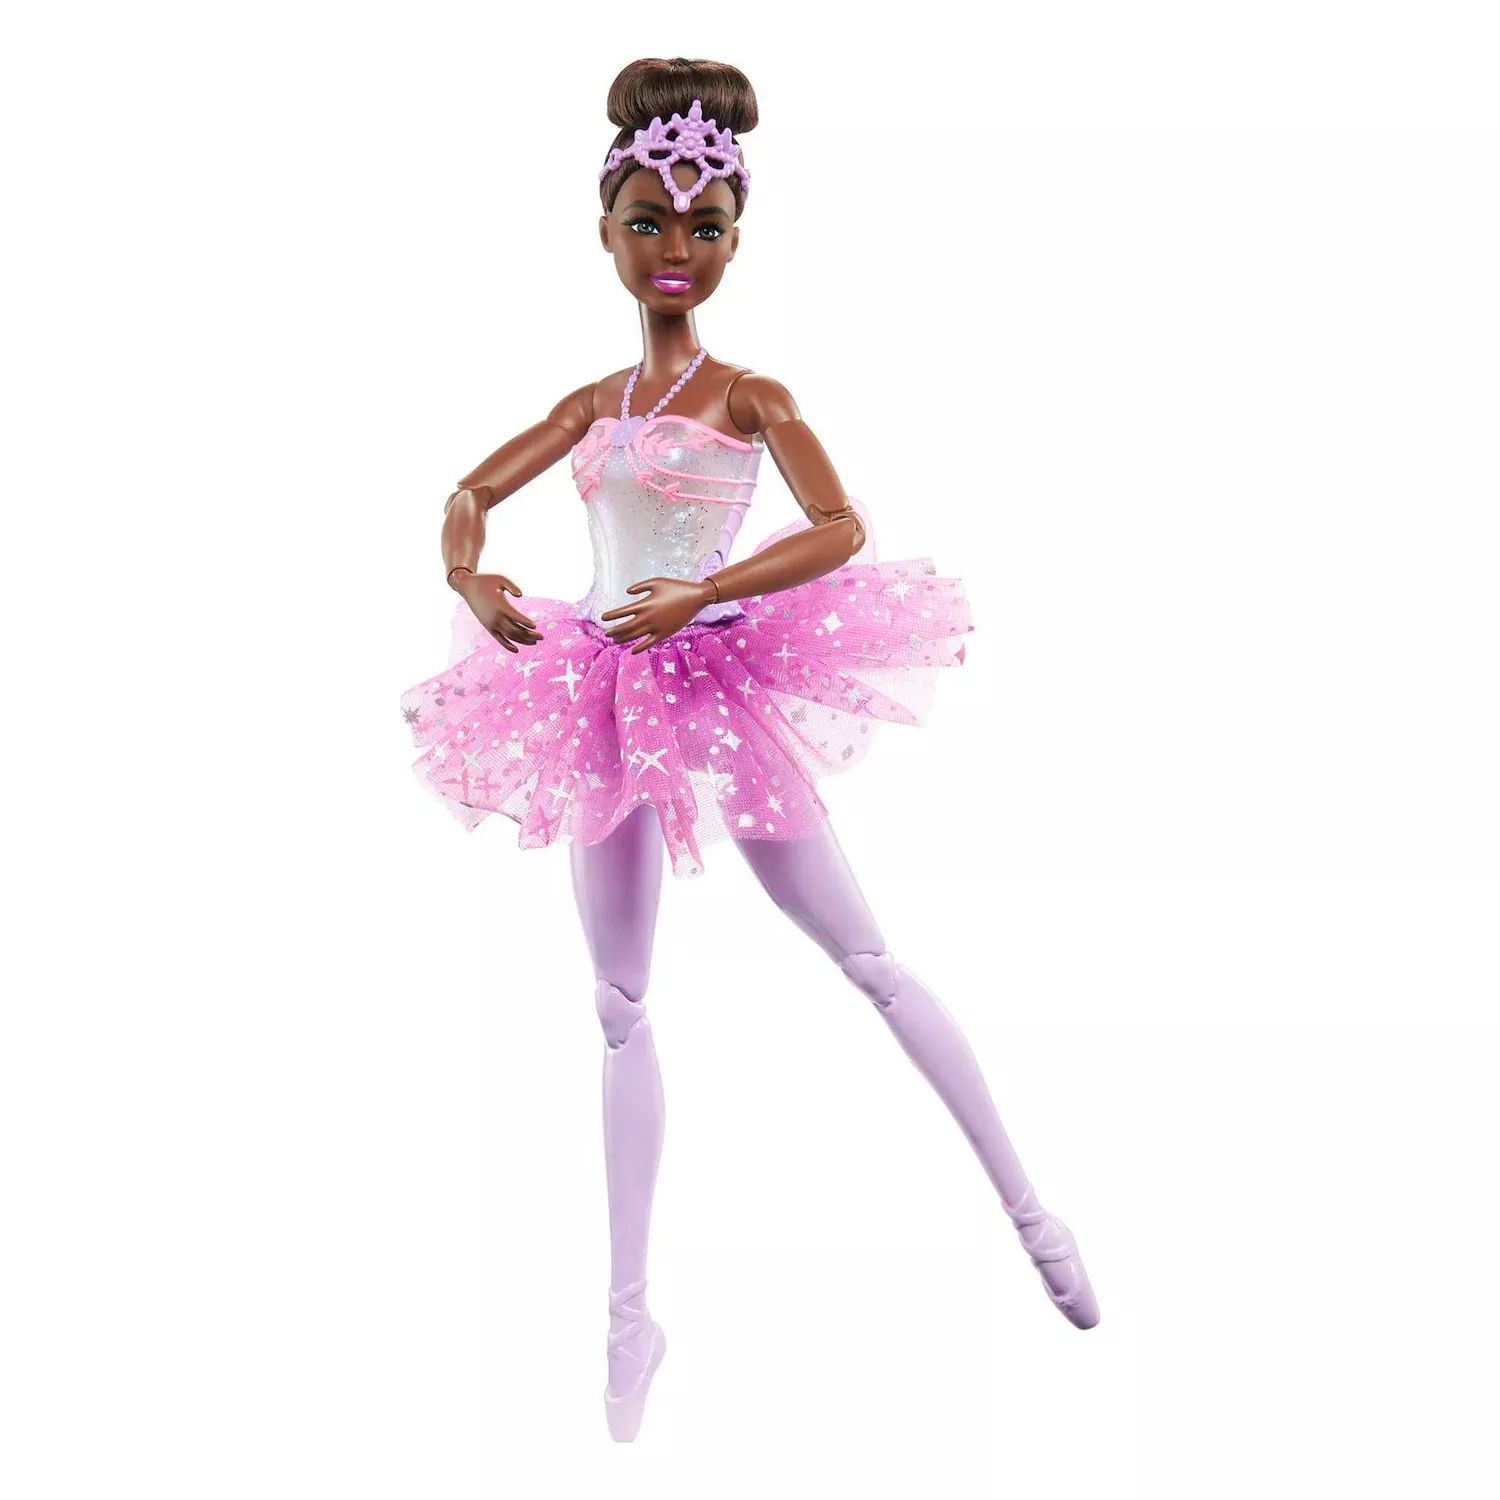 Волшебная светящаяся кукла Барби-балерина с черными волосами Barbie